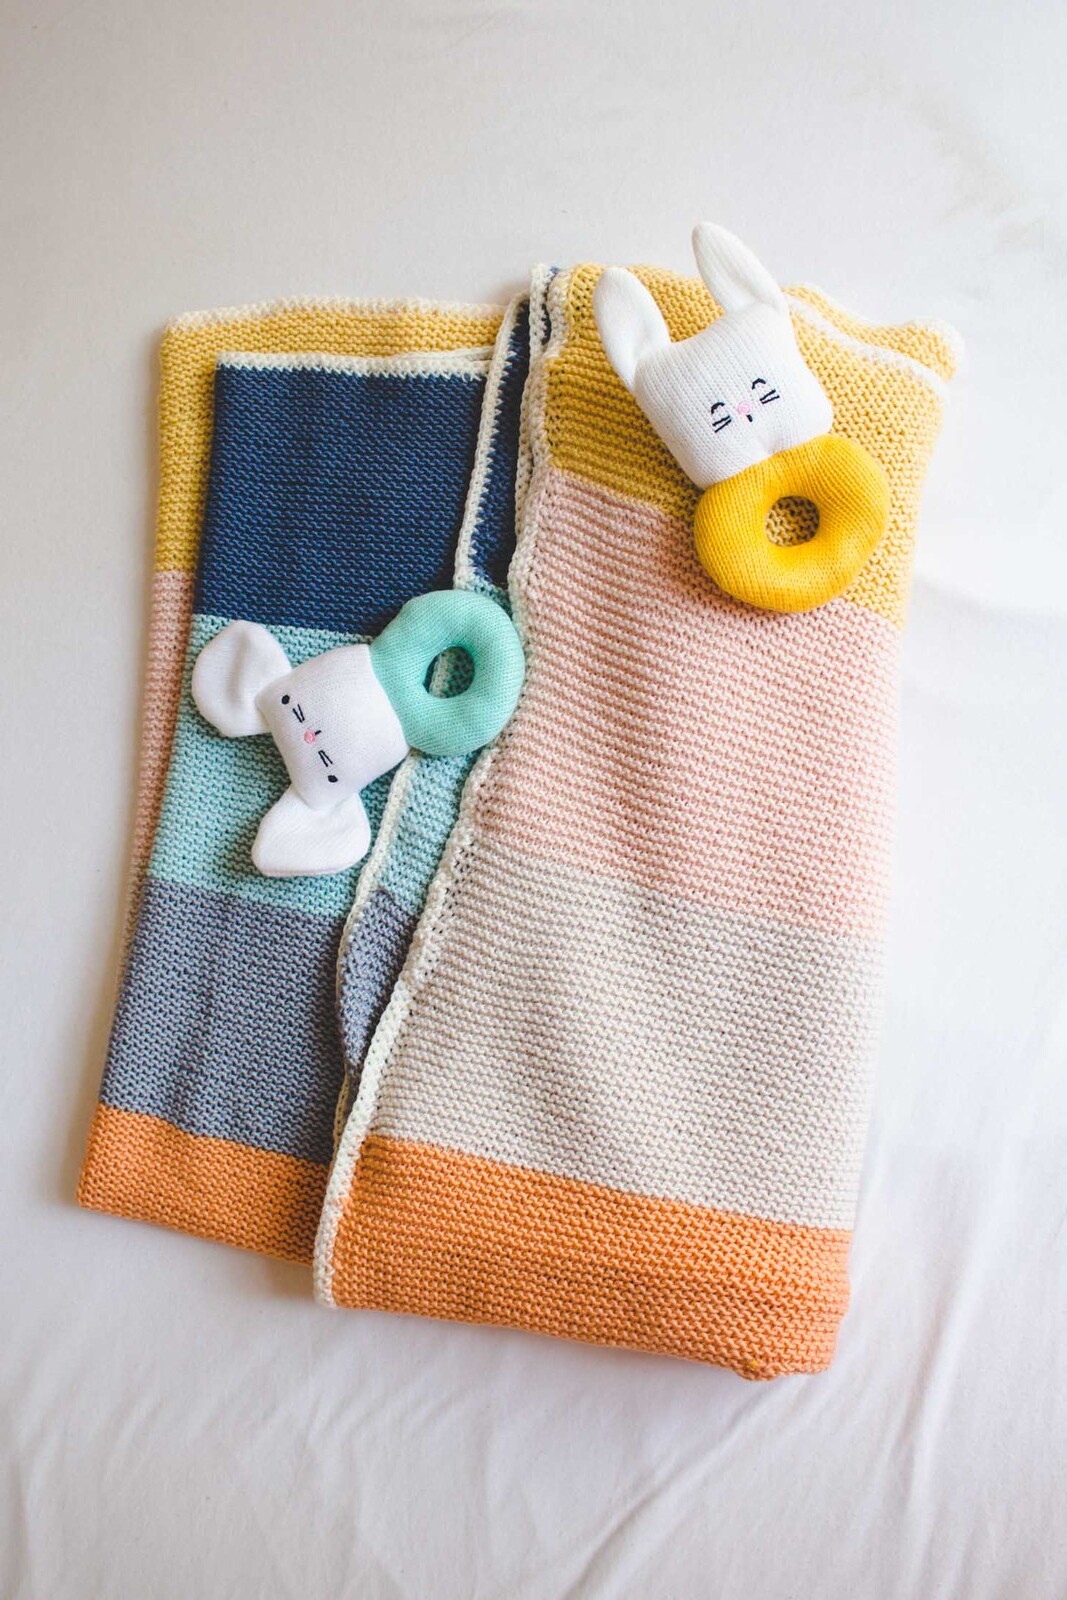 geschenk zur geburt: bunte babydecke mit häkelrand stricken - DIY/anleitung